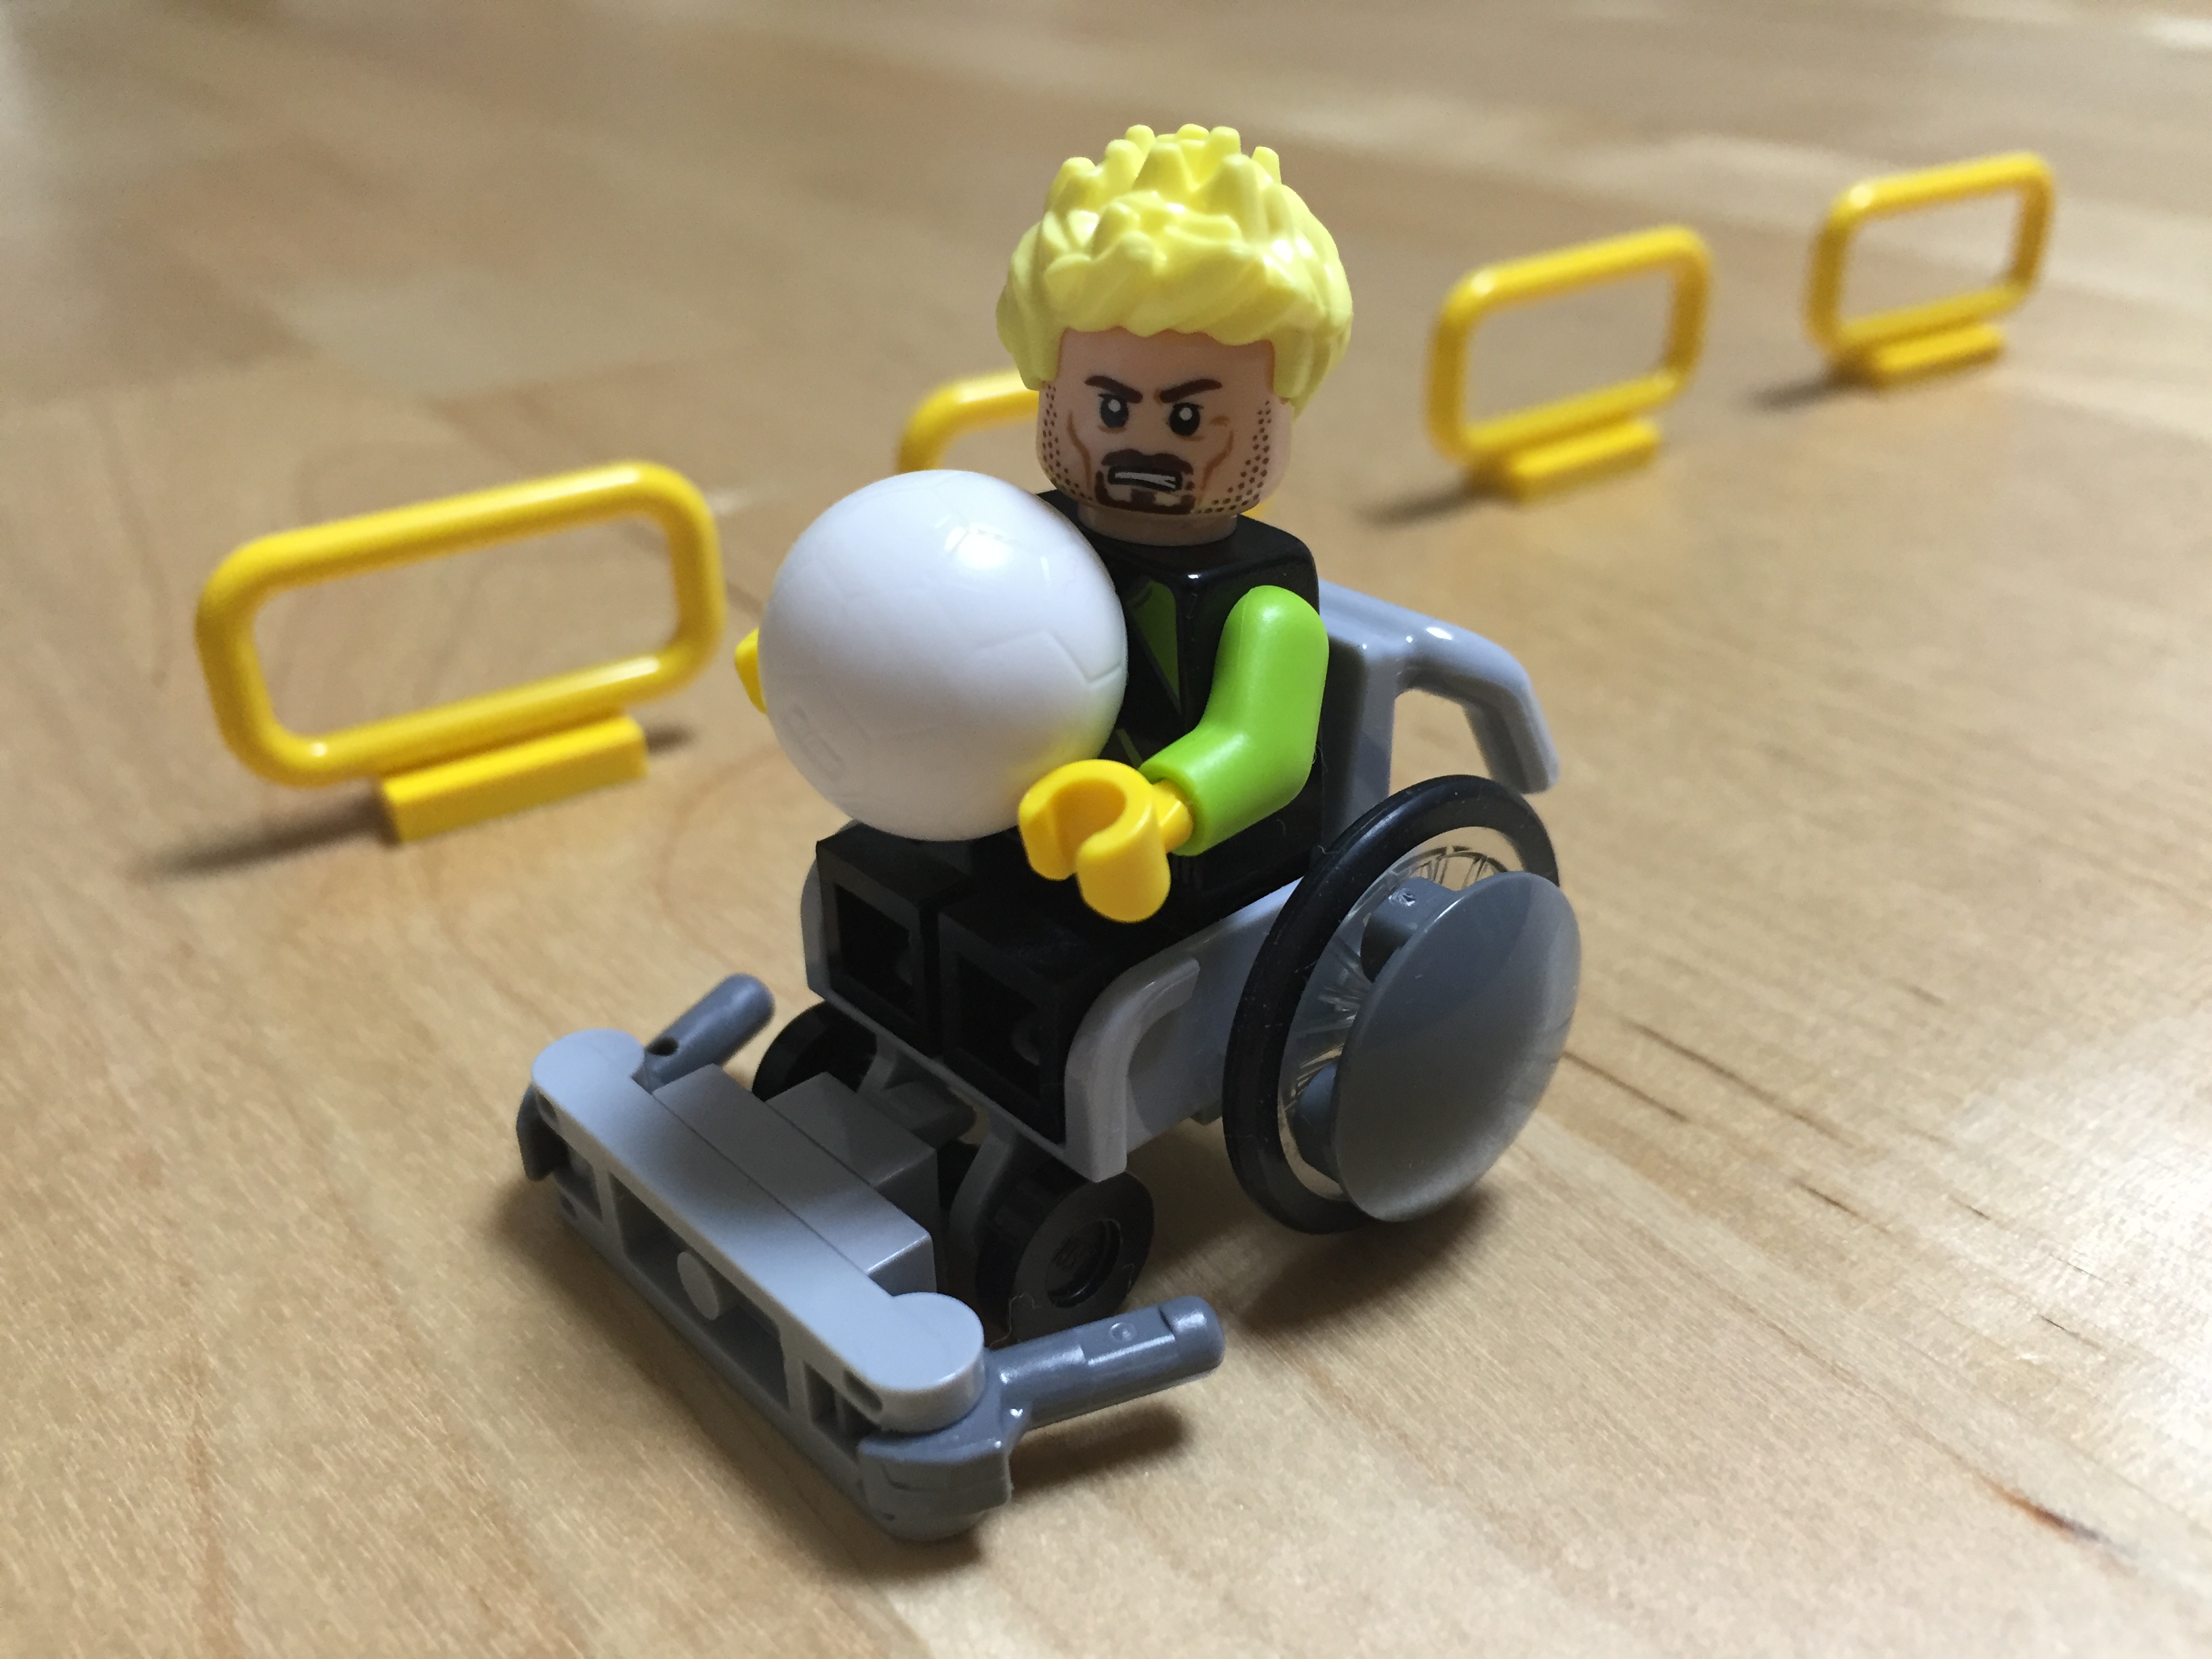 LEGO・ウェルチェアラグビー用の車椅子アスリートフィギュアイメージ